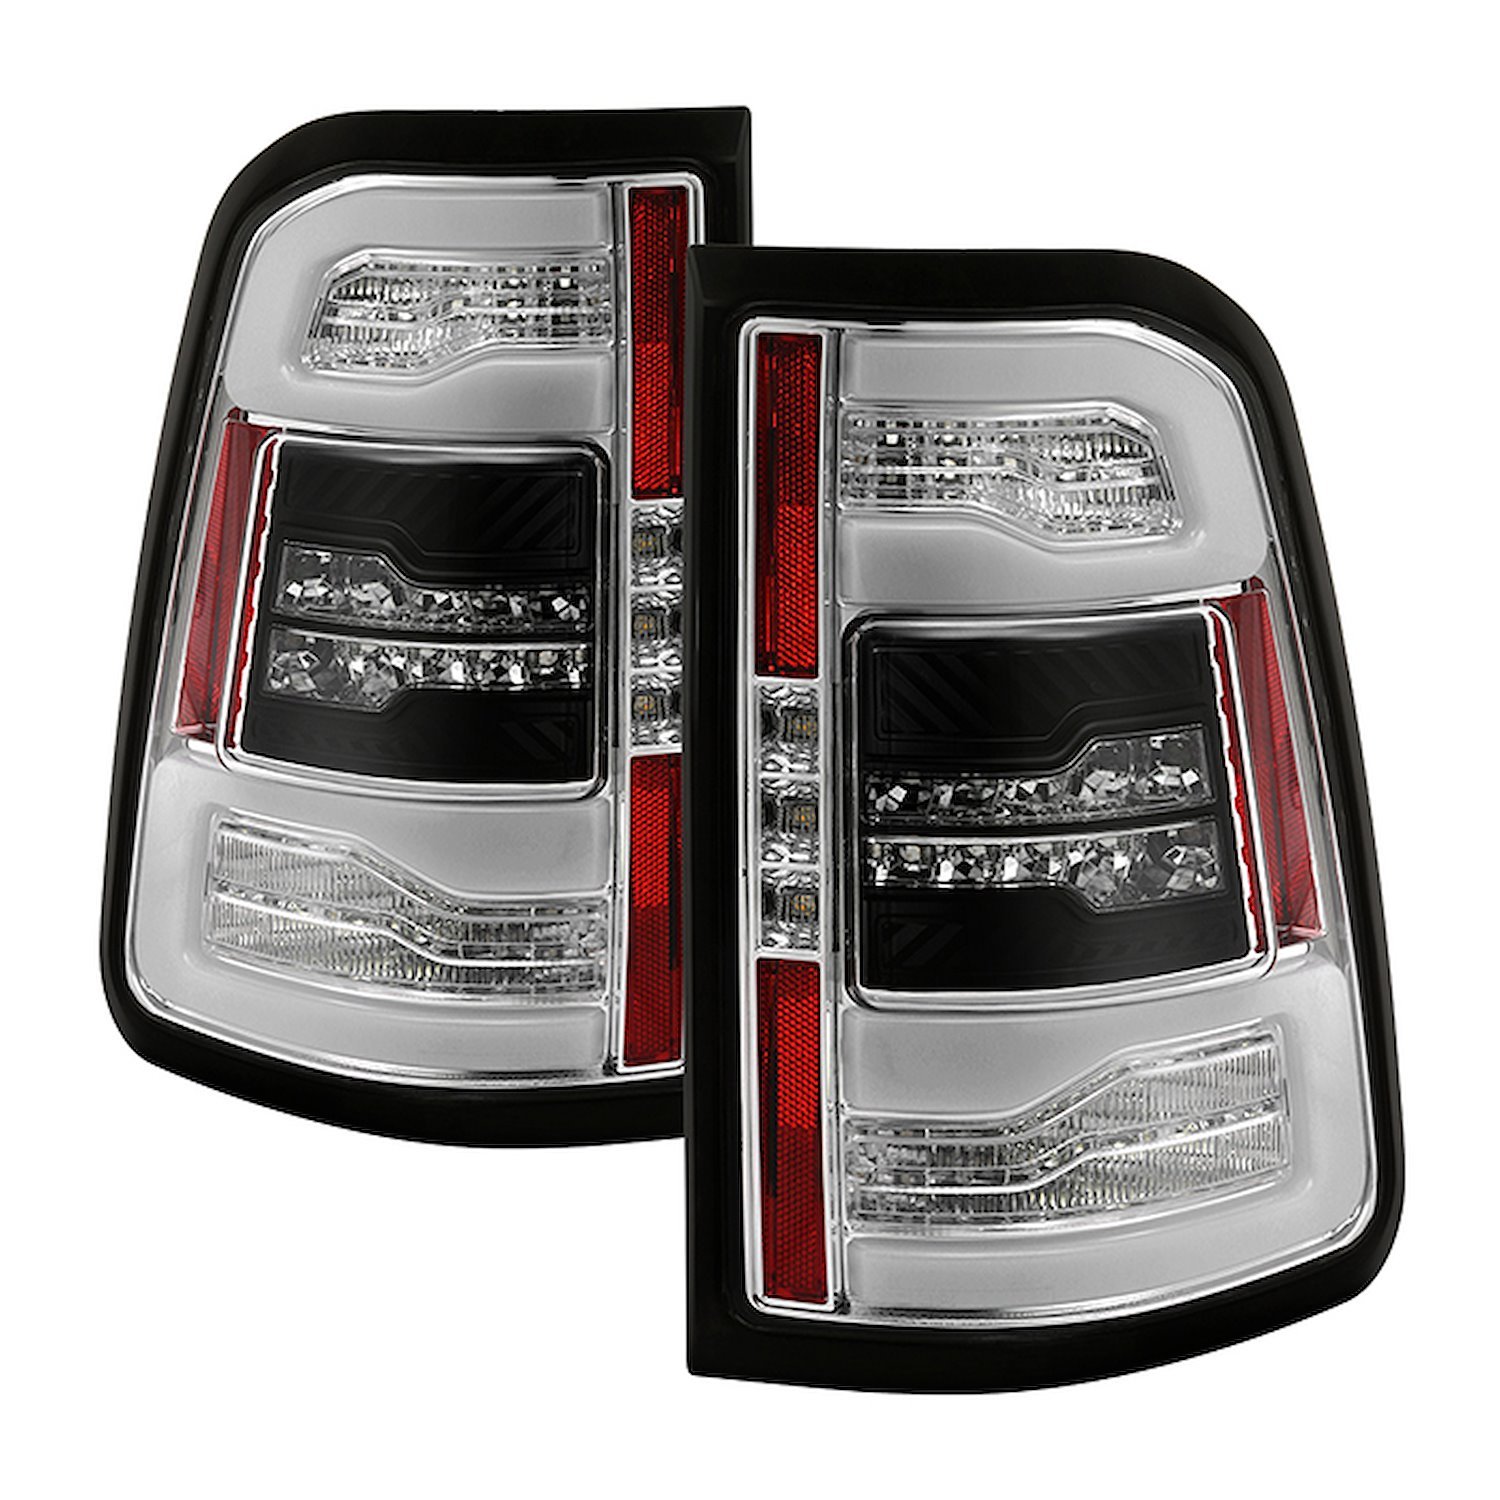 LED Tail Lights for 2019-2020 Dodge Ram 1500, Chrome